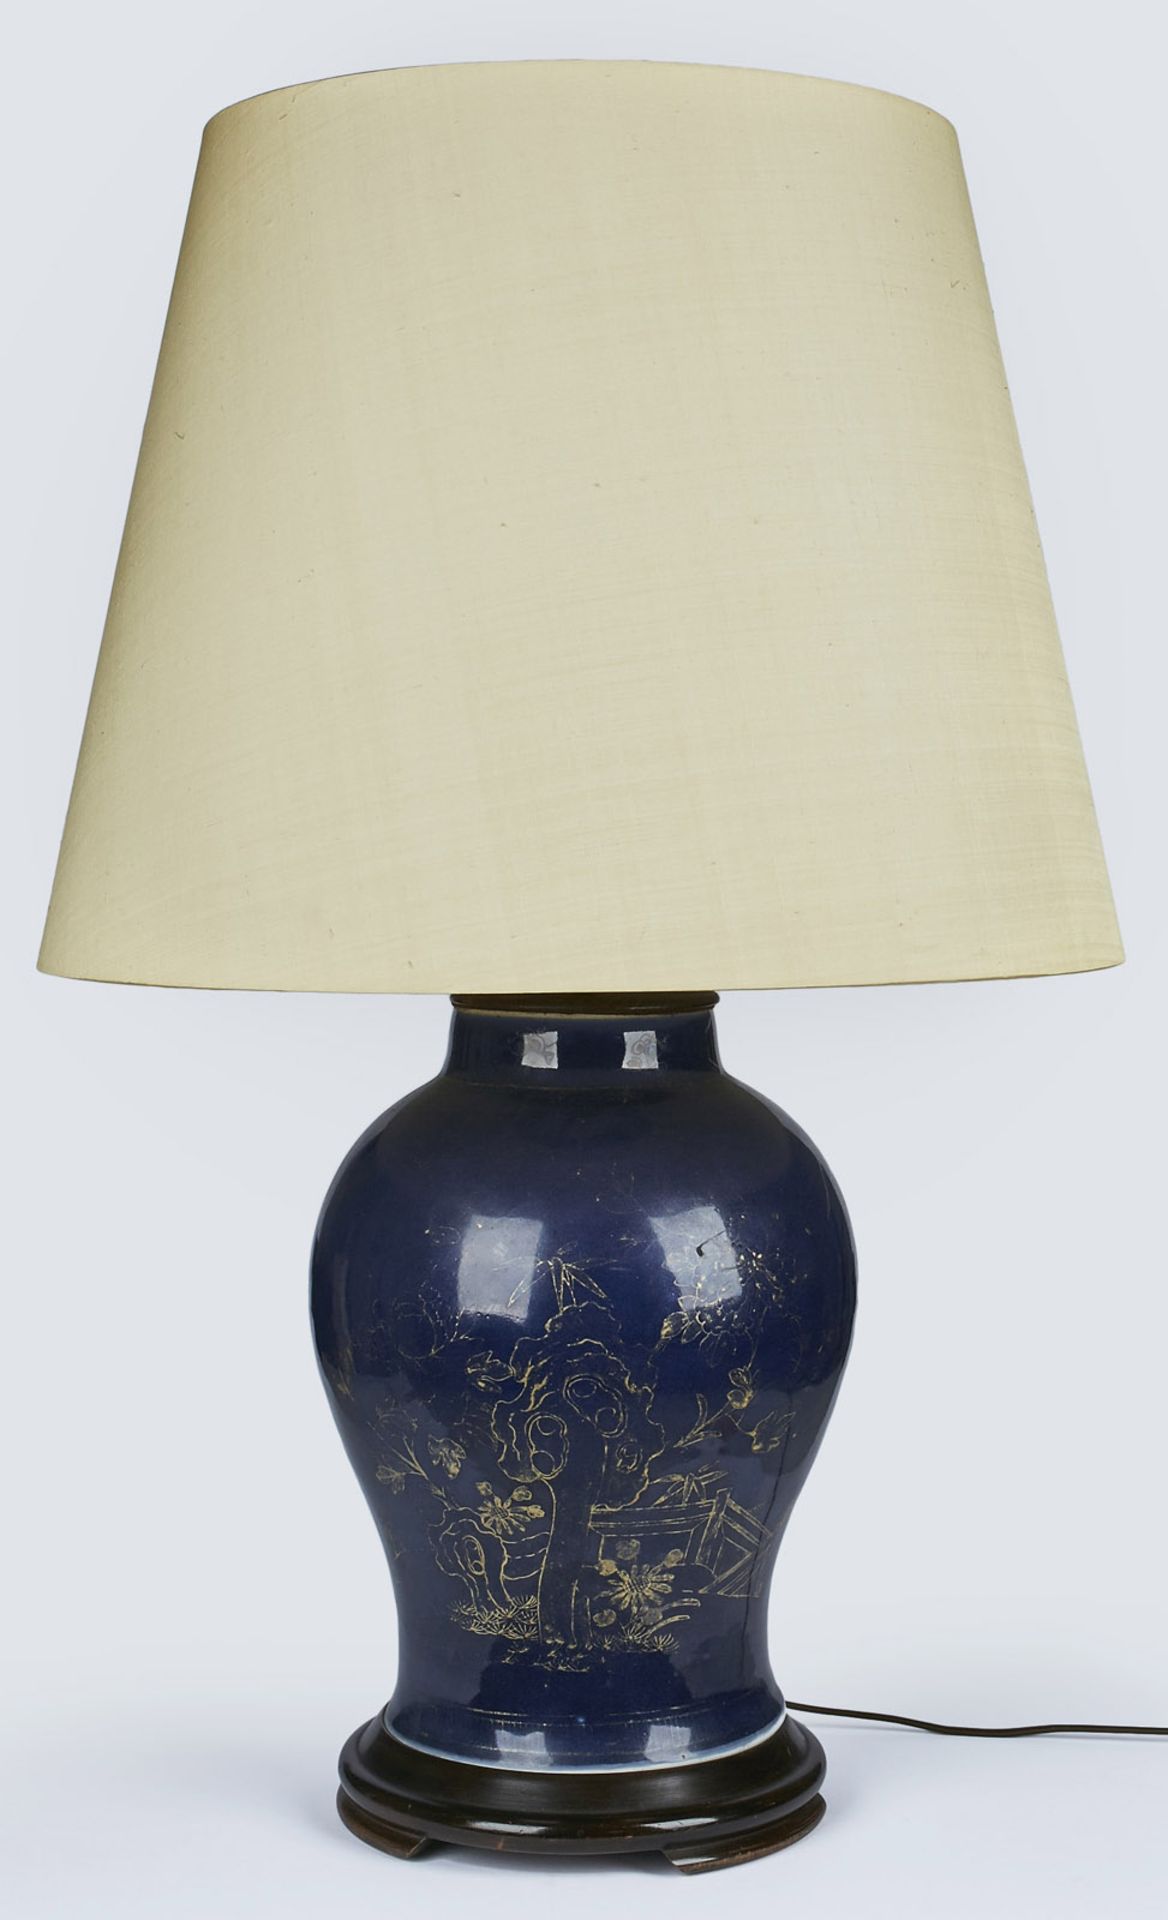 Gr. Lampe aus Vase, China wohl 18. Jh.